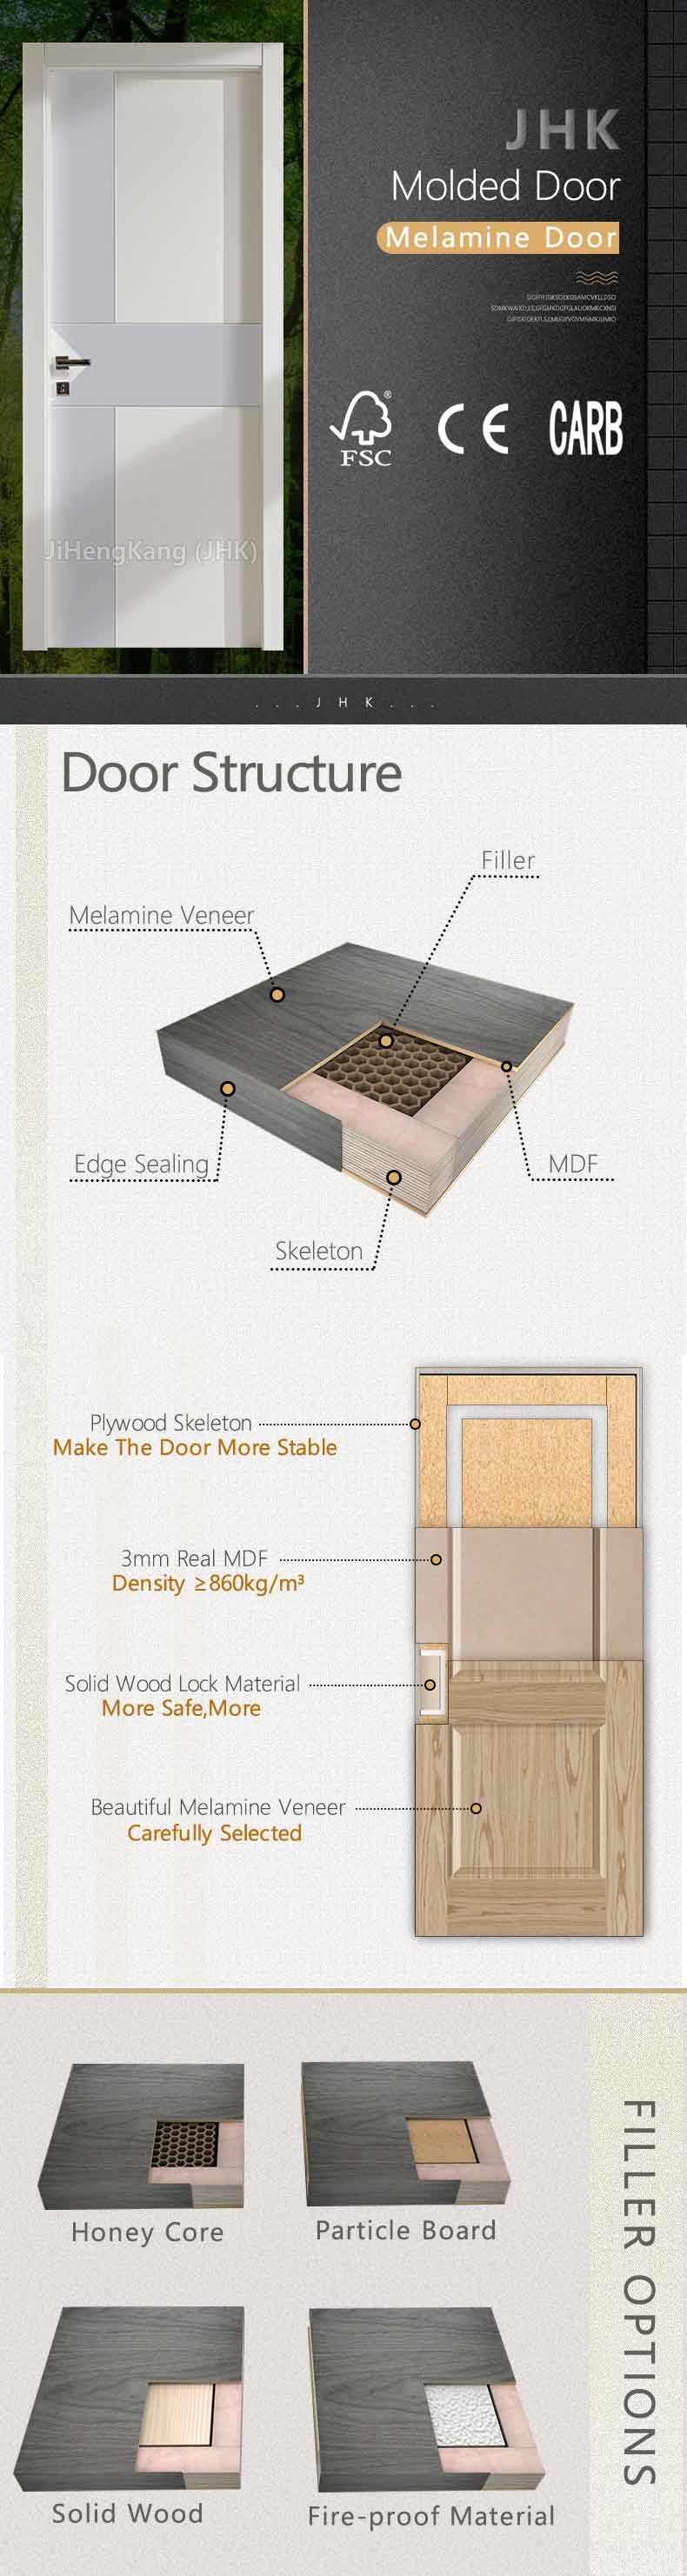 Jhk-MD39 Building Materials Melamine Door MDF External Doors